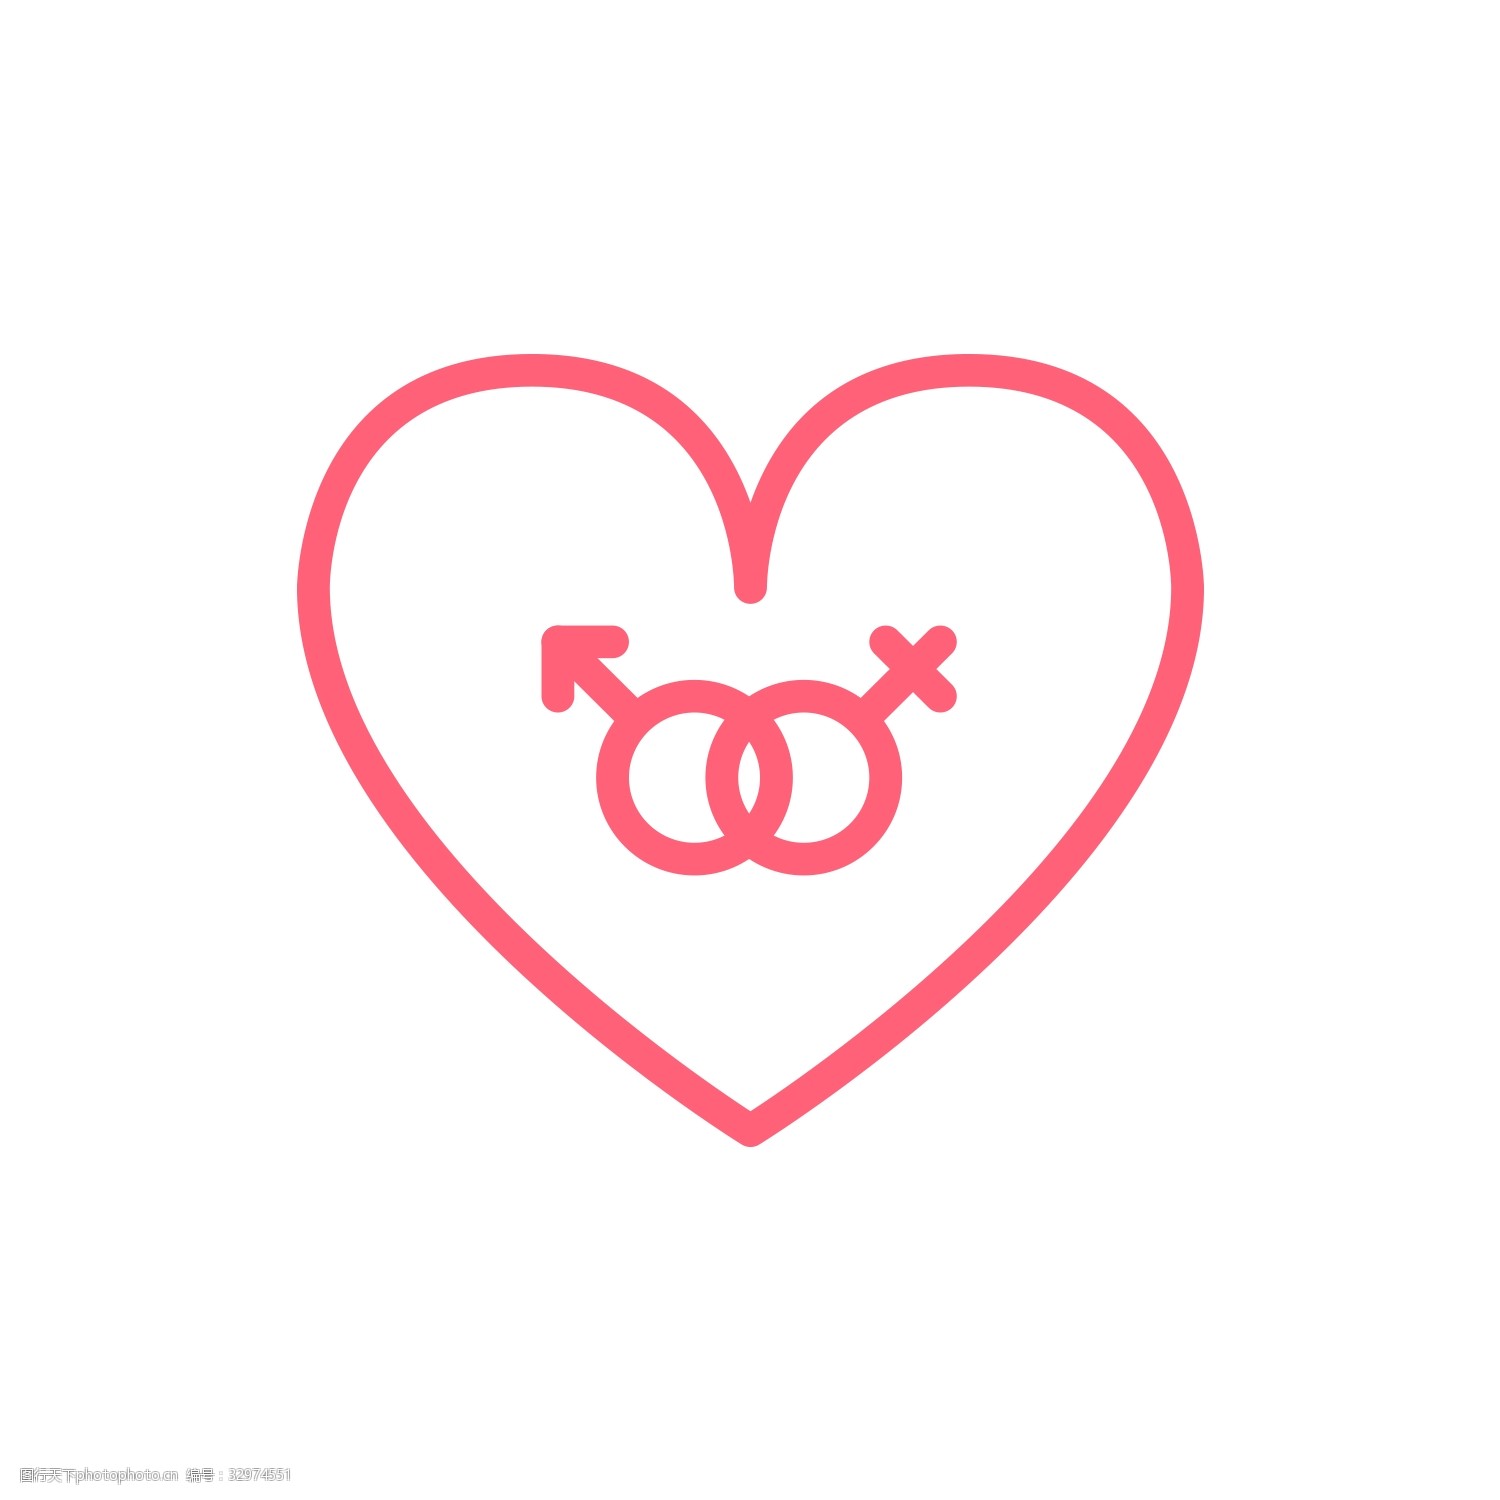 象征爱情的符号图片